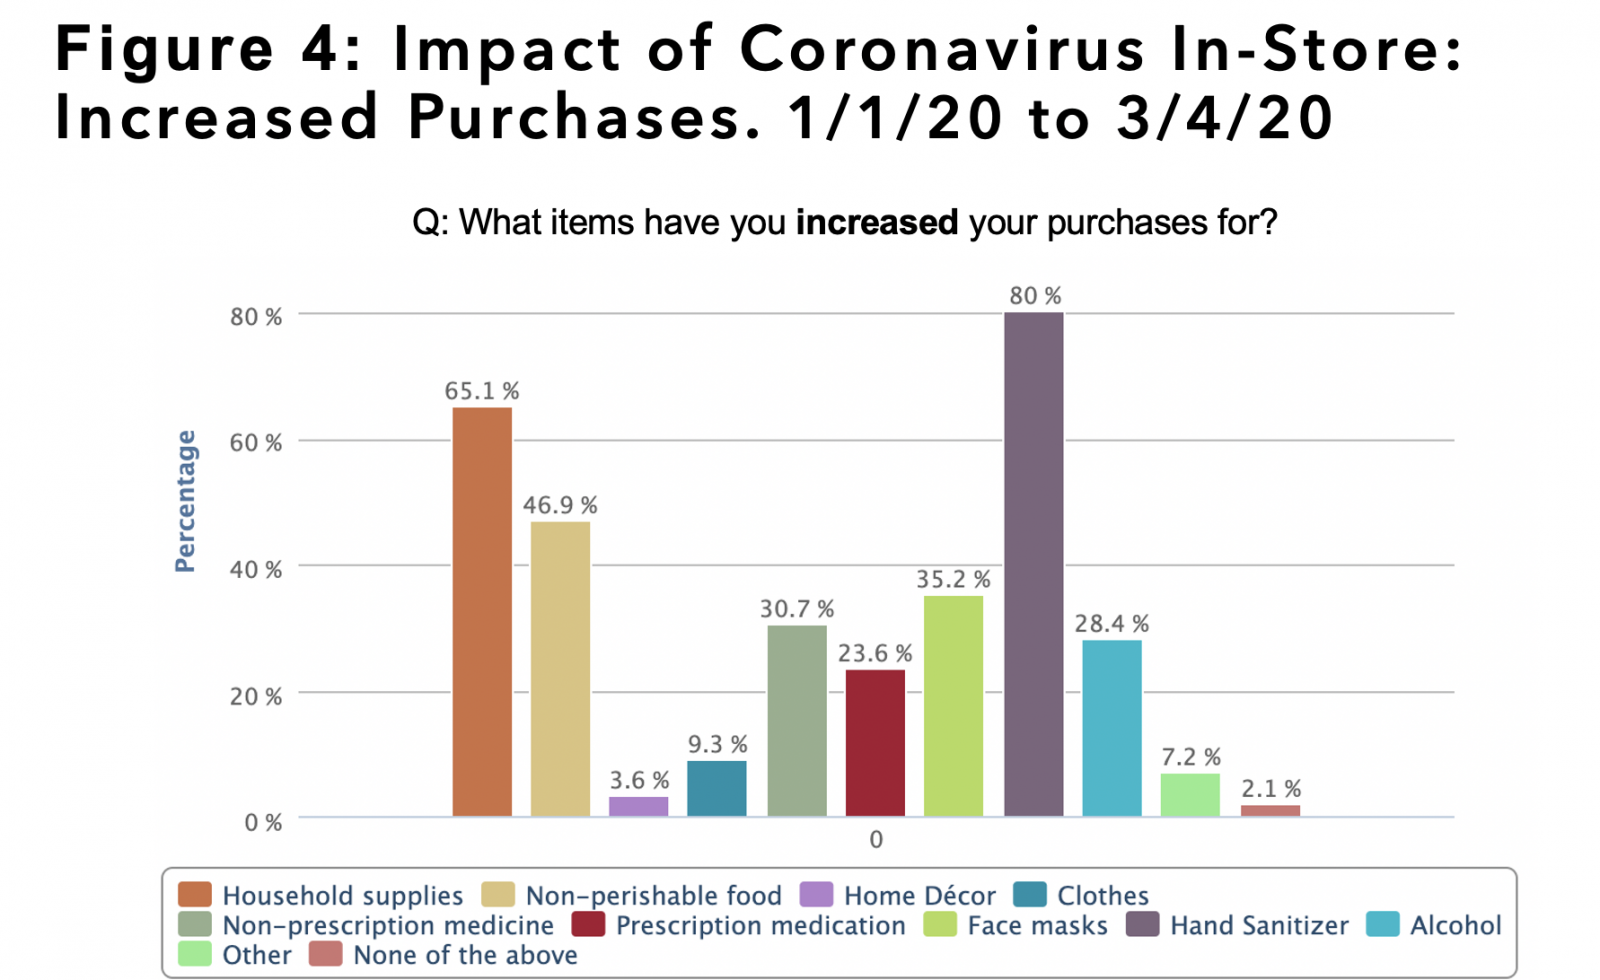 Impact of Coronavirus In-Store: Increased Purchases.